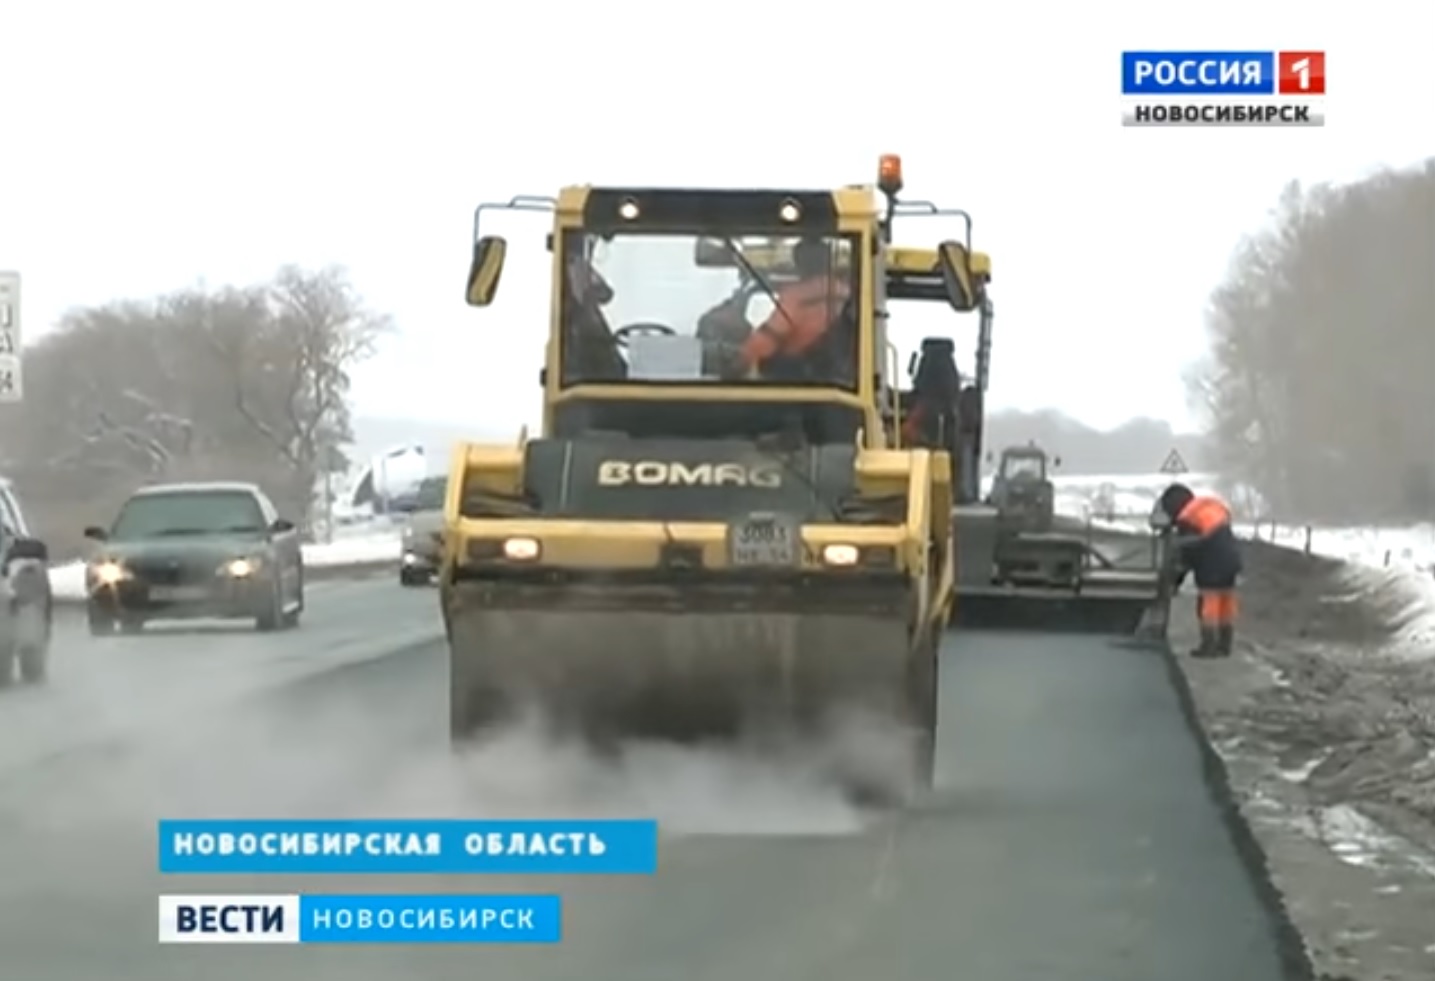 Работы по ремонту дороги Новосибирск – Кочки – Павлодар, проводимые в снег, не приняты